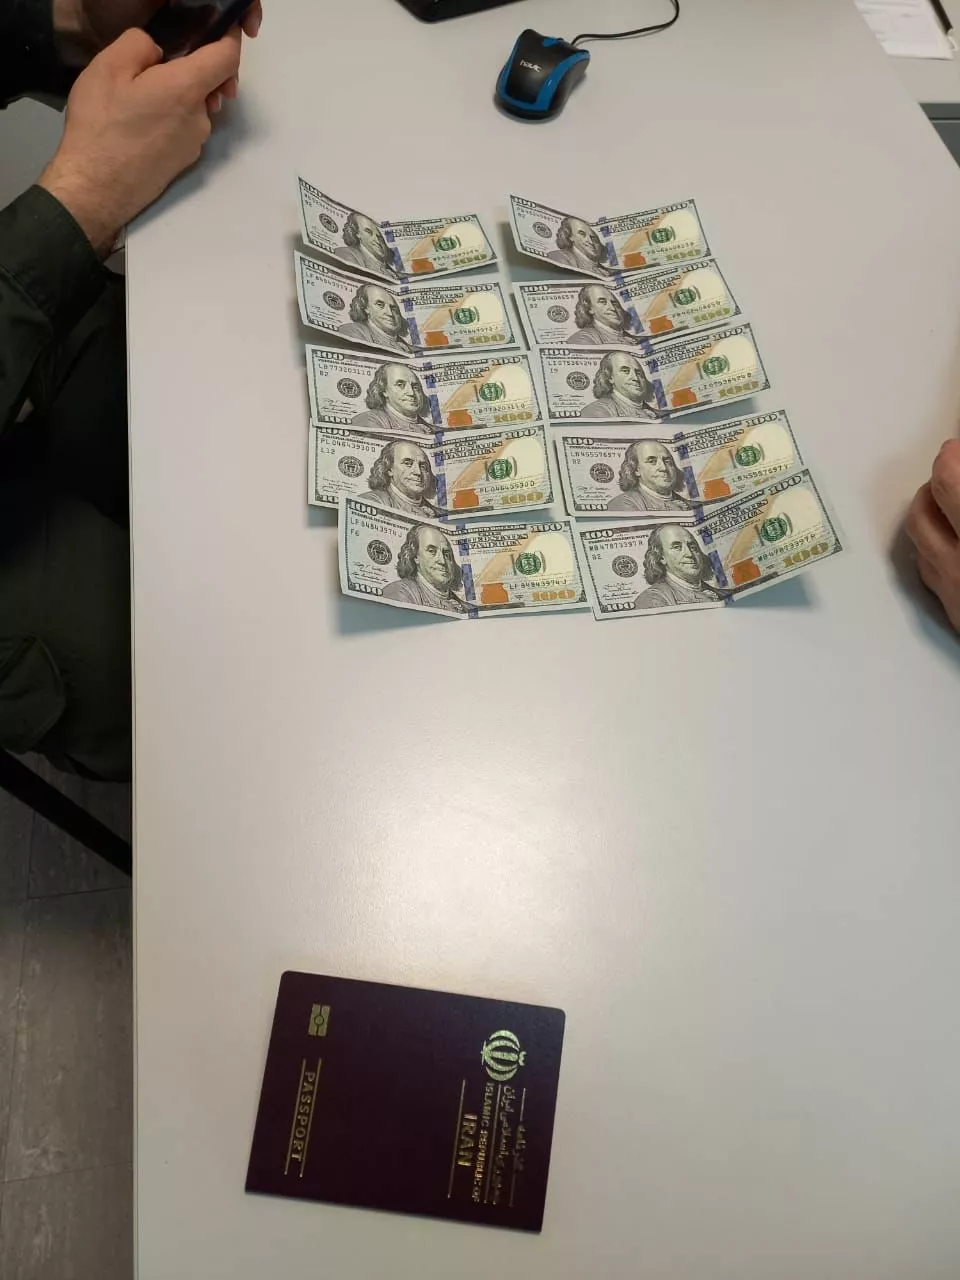 Иранец предлагал взятку пограничникам. Фото: Государственная пограничная служба Украины